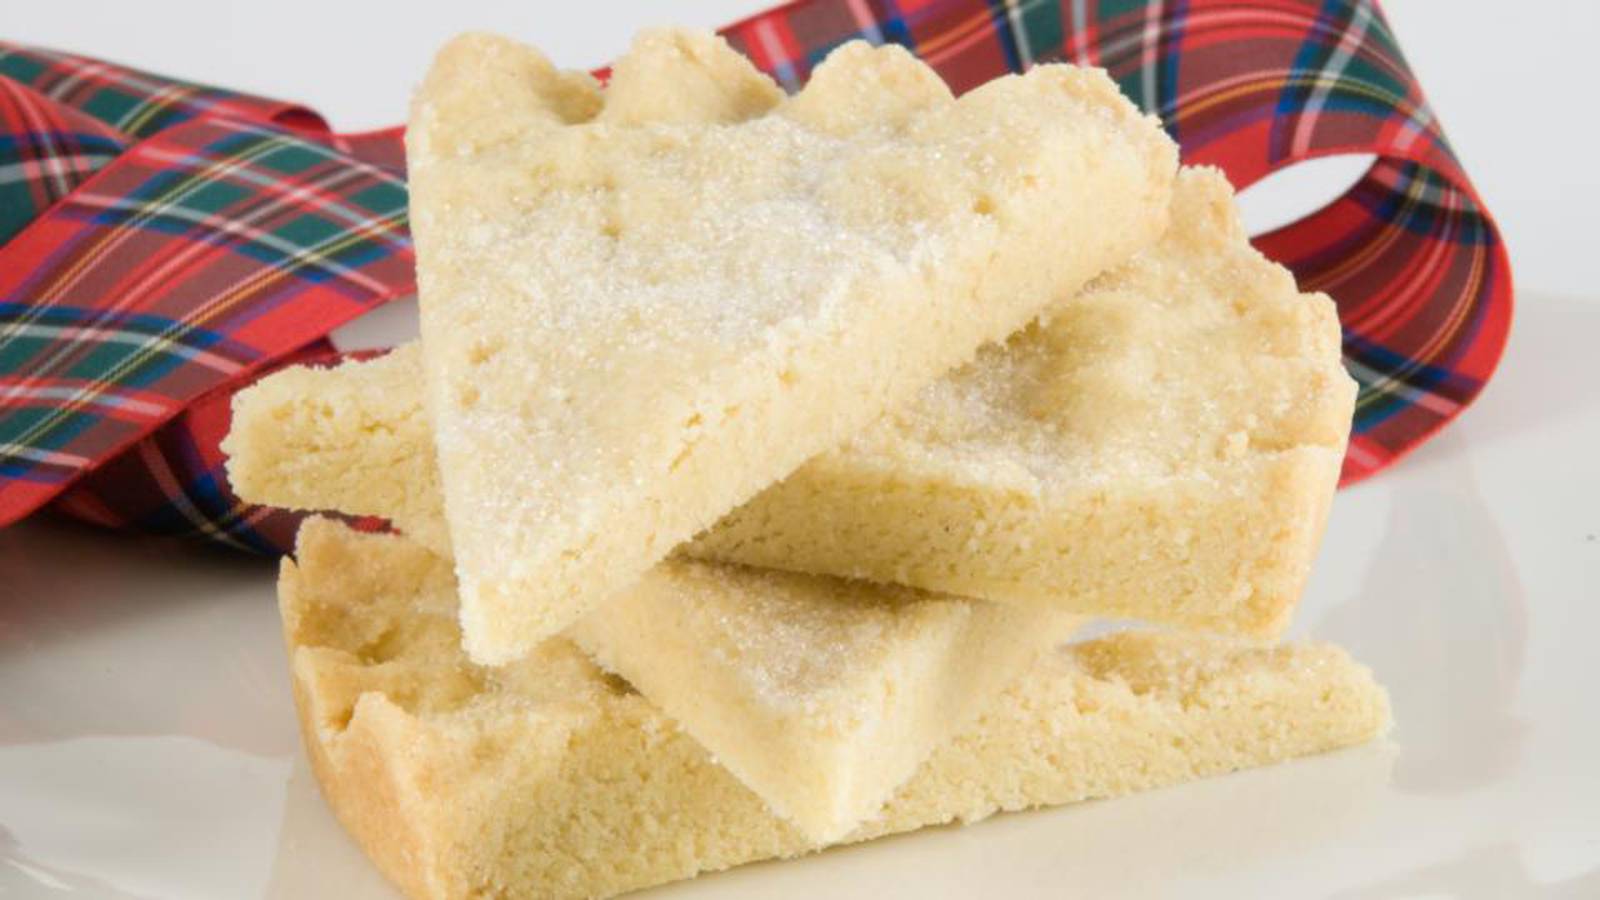 Scottish Shortbread • Authentic recipe!